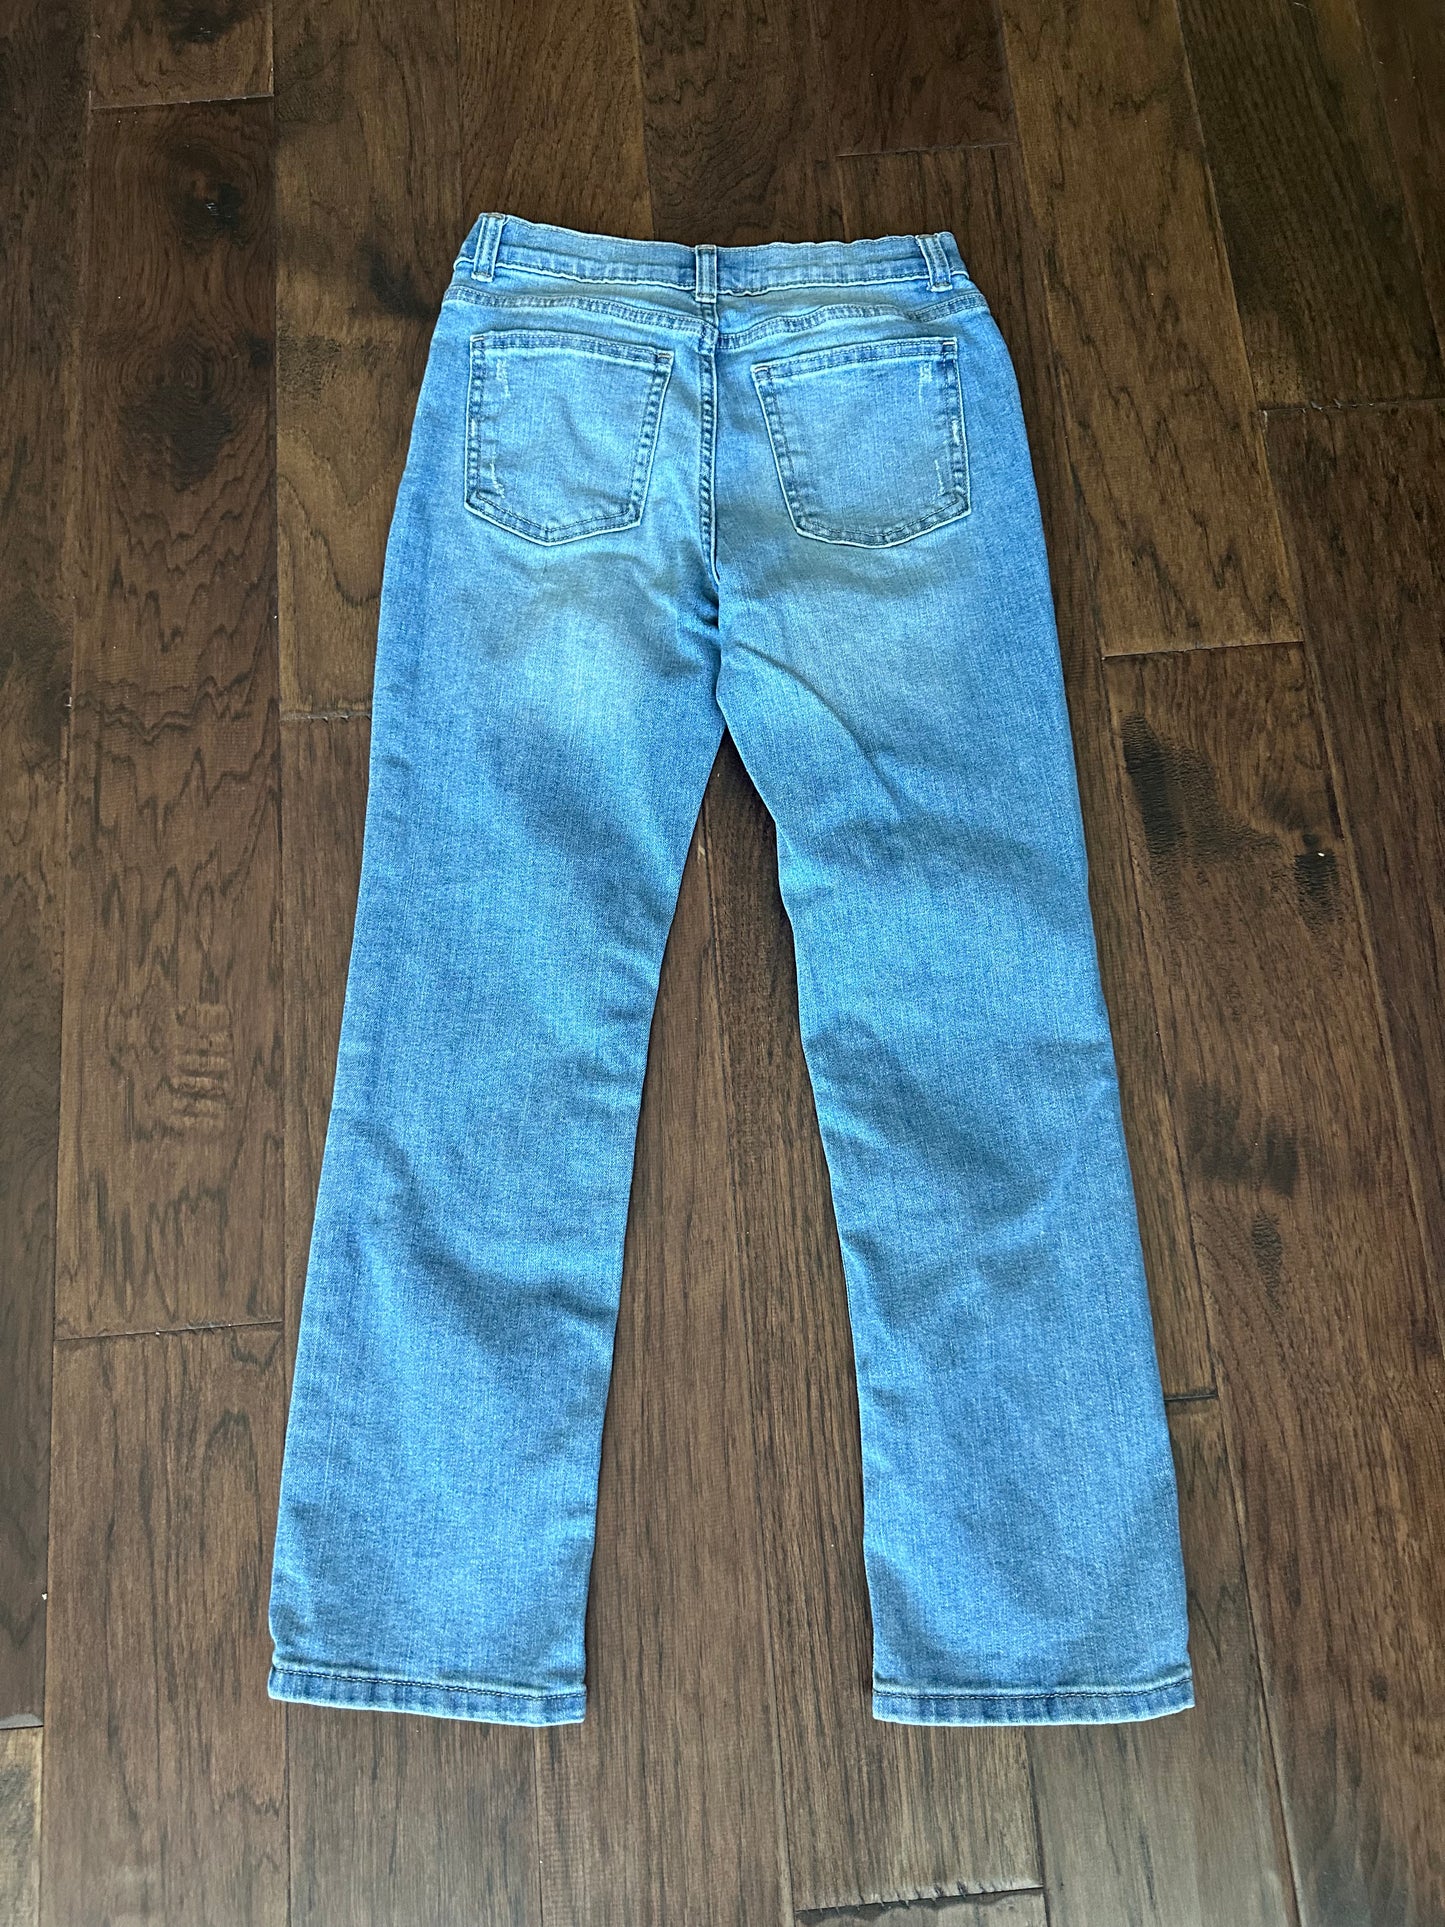 Wonder Nation - Blue Jeans - size 12